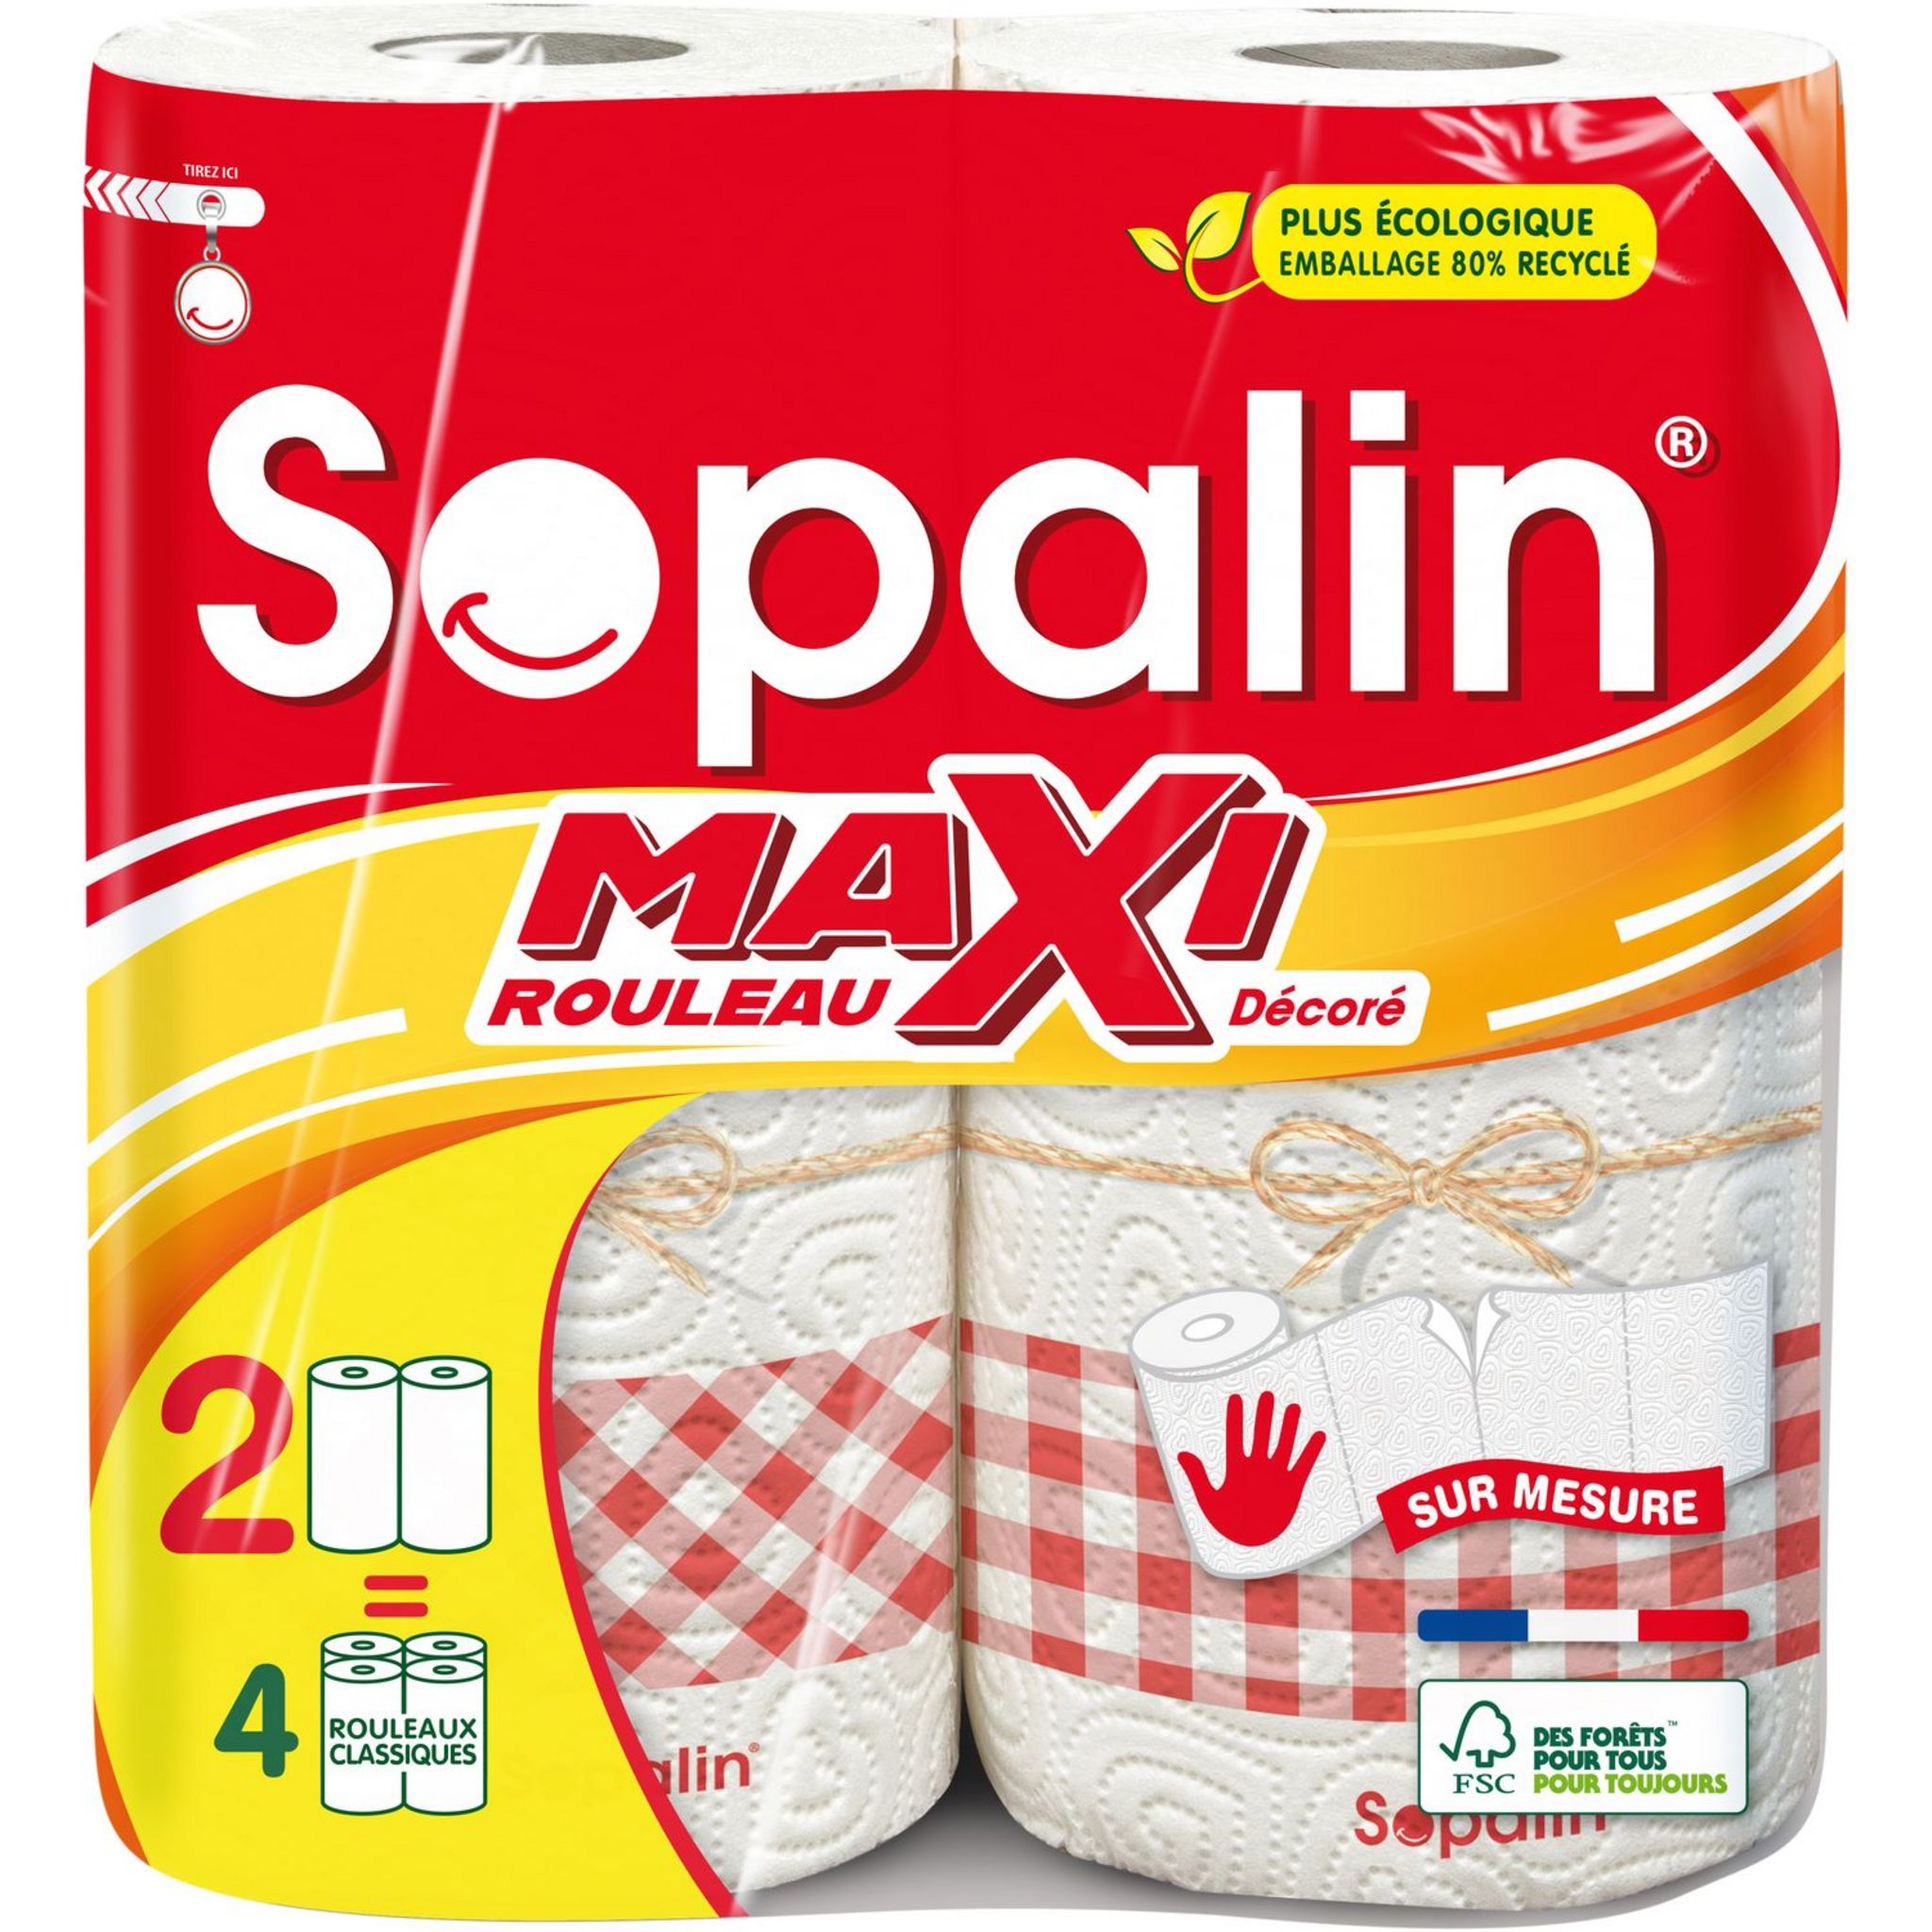 SOPALIN ESSUIE-TOUT SUR MESURE 3 MAXI = 6 ROULEAUX, 3 MAXI